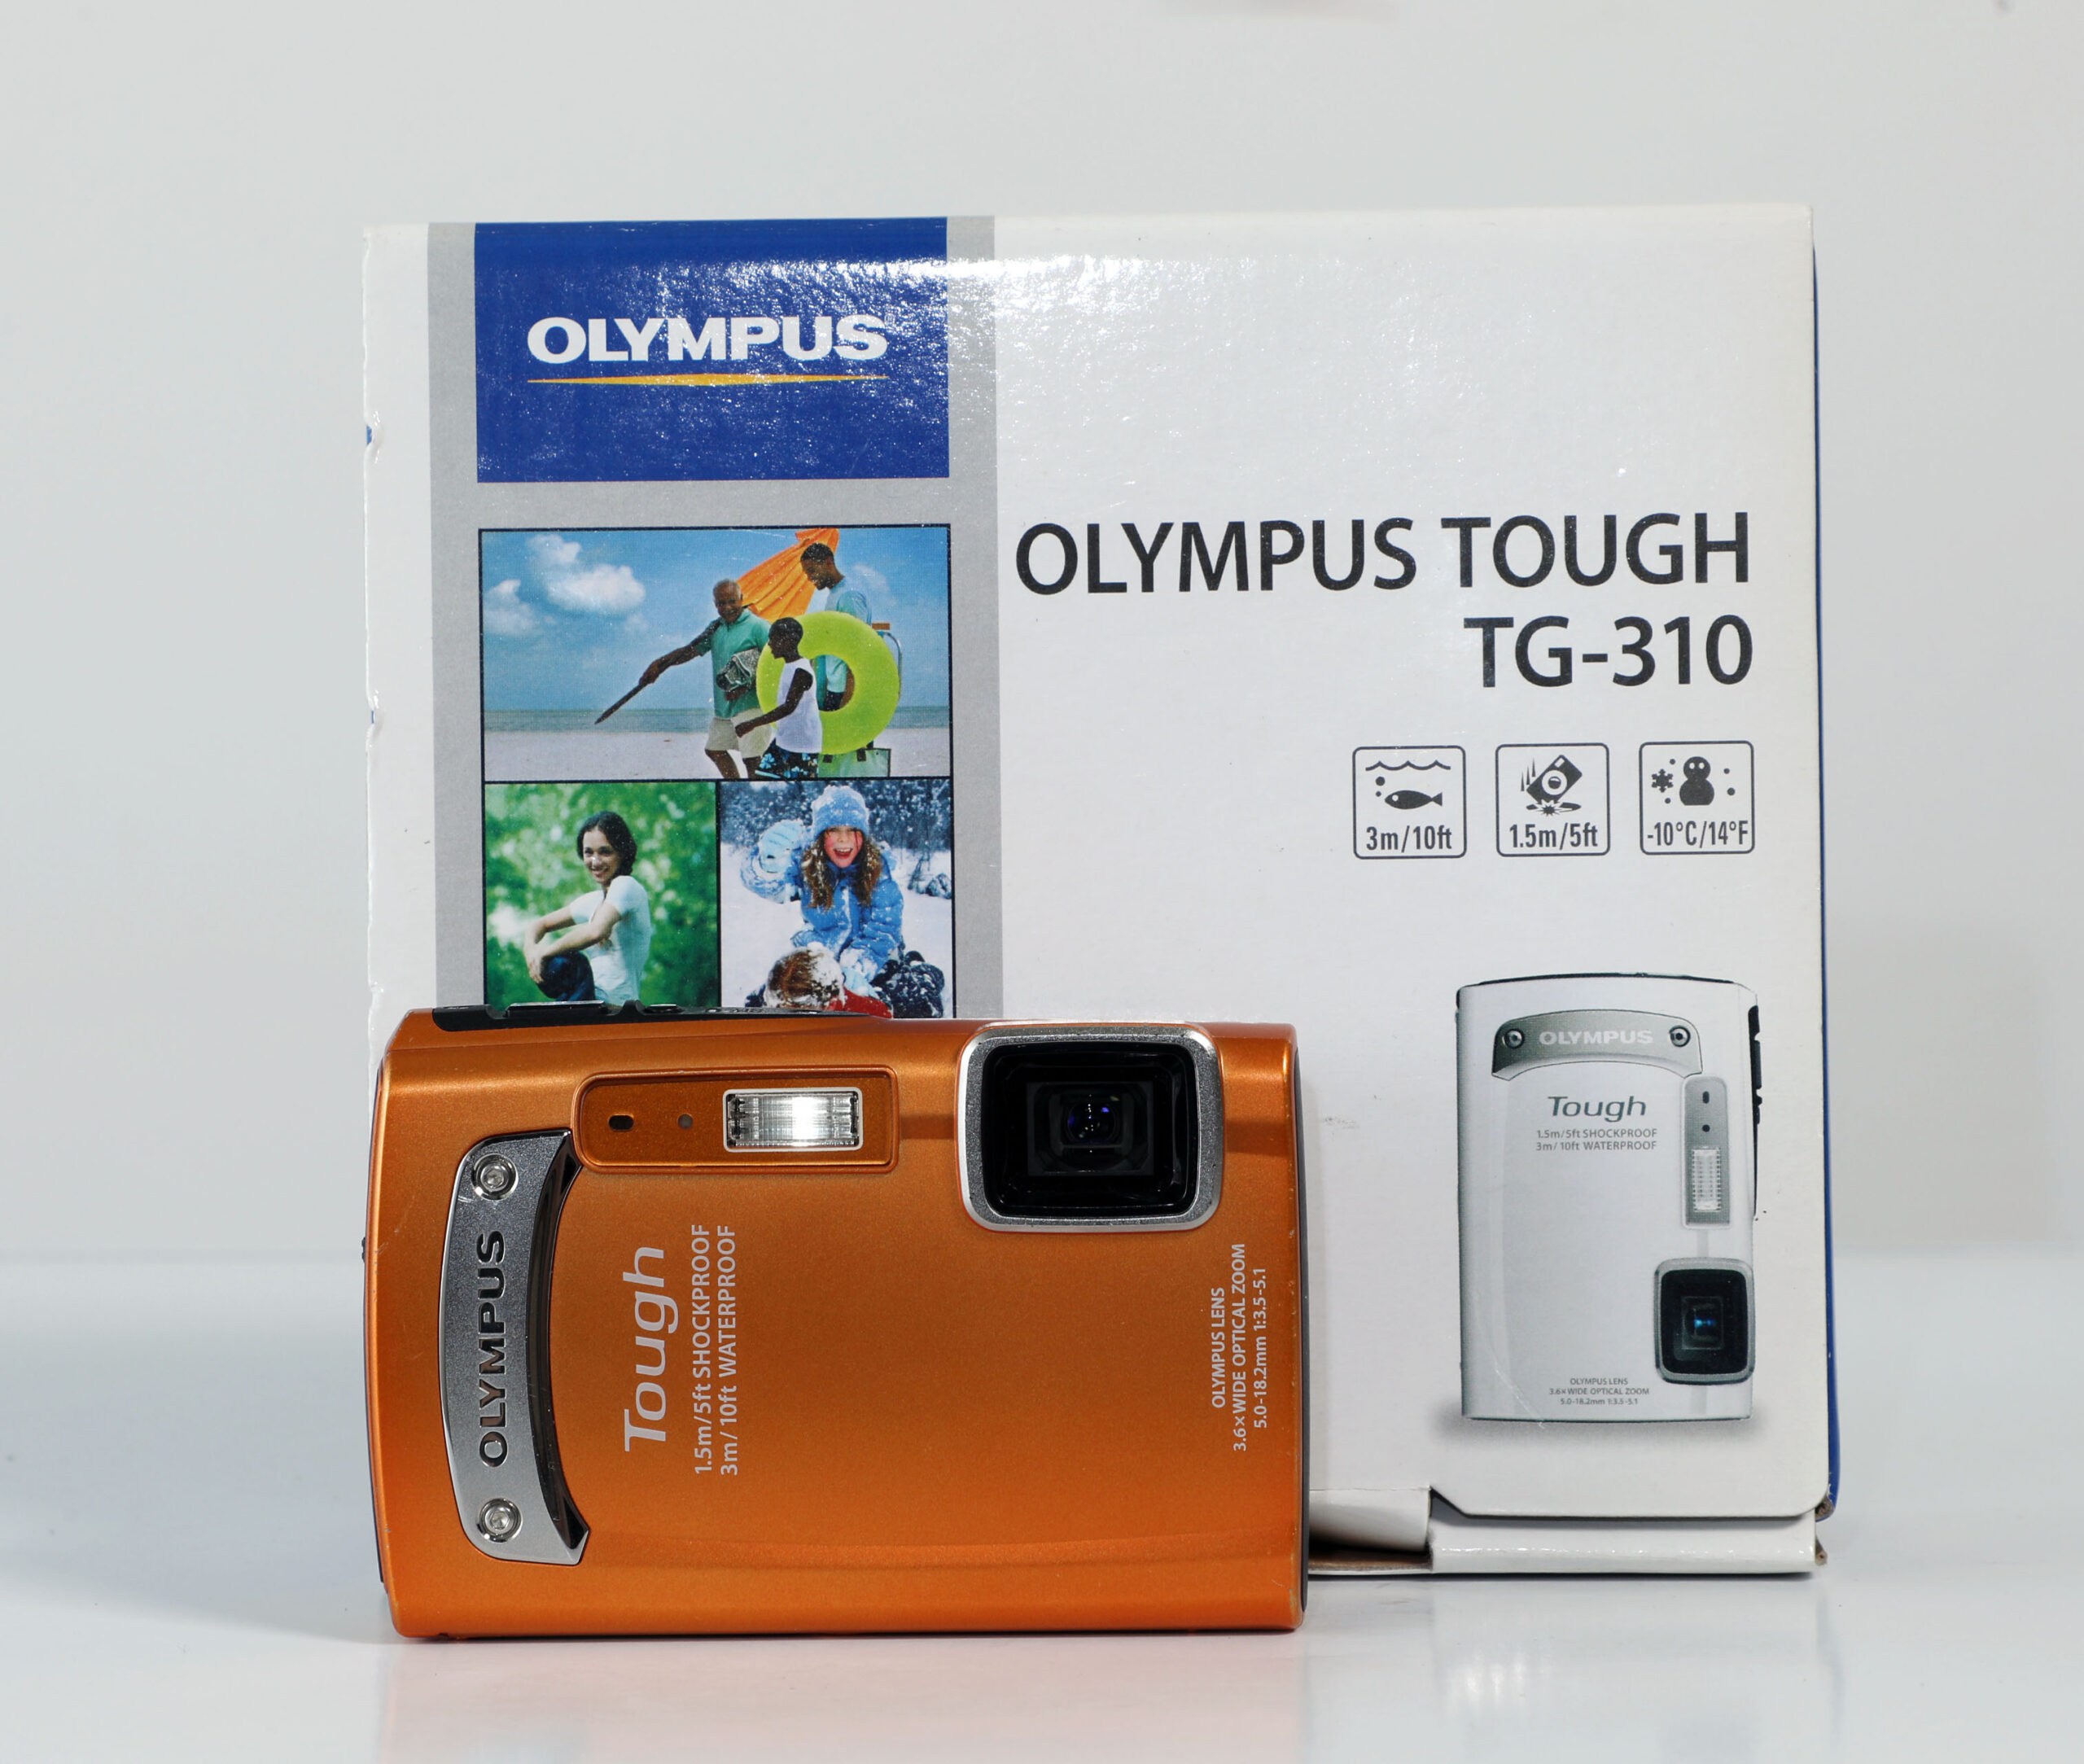 OLYMPUS TOUGH TG-310